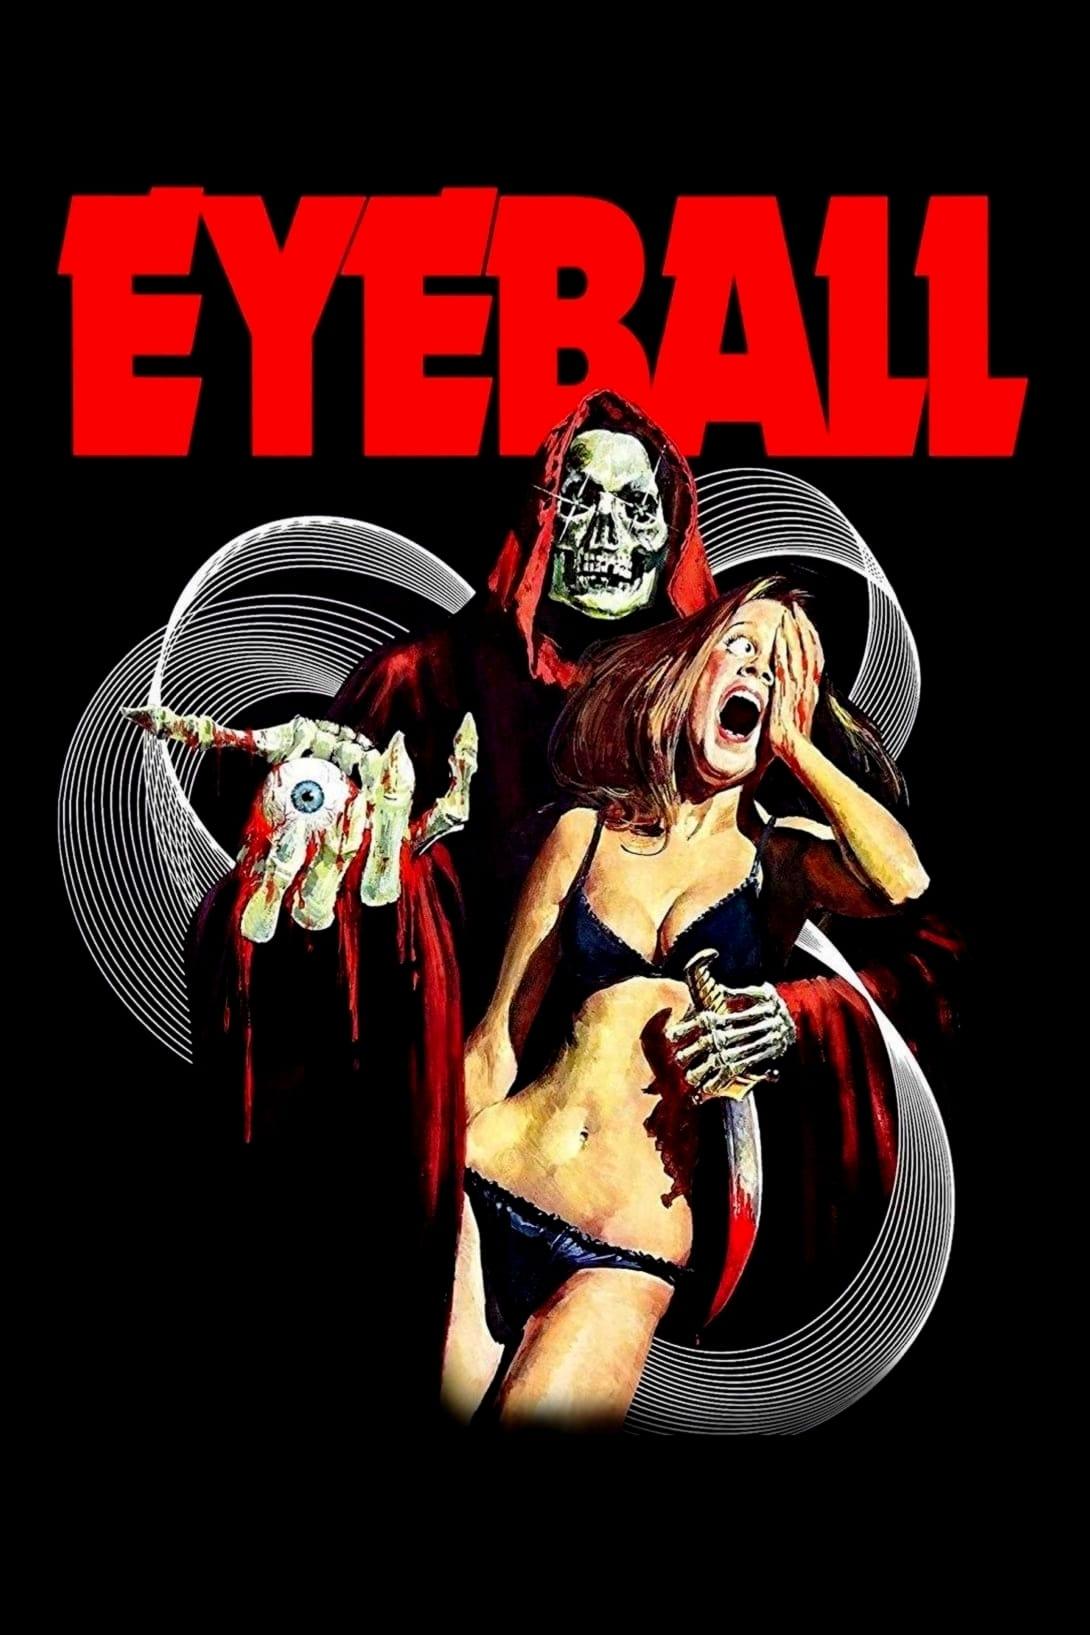 Eyeball poster